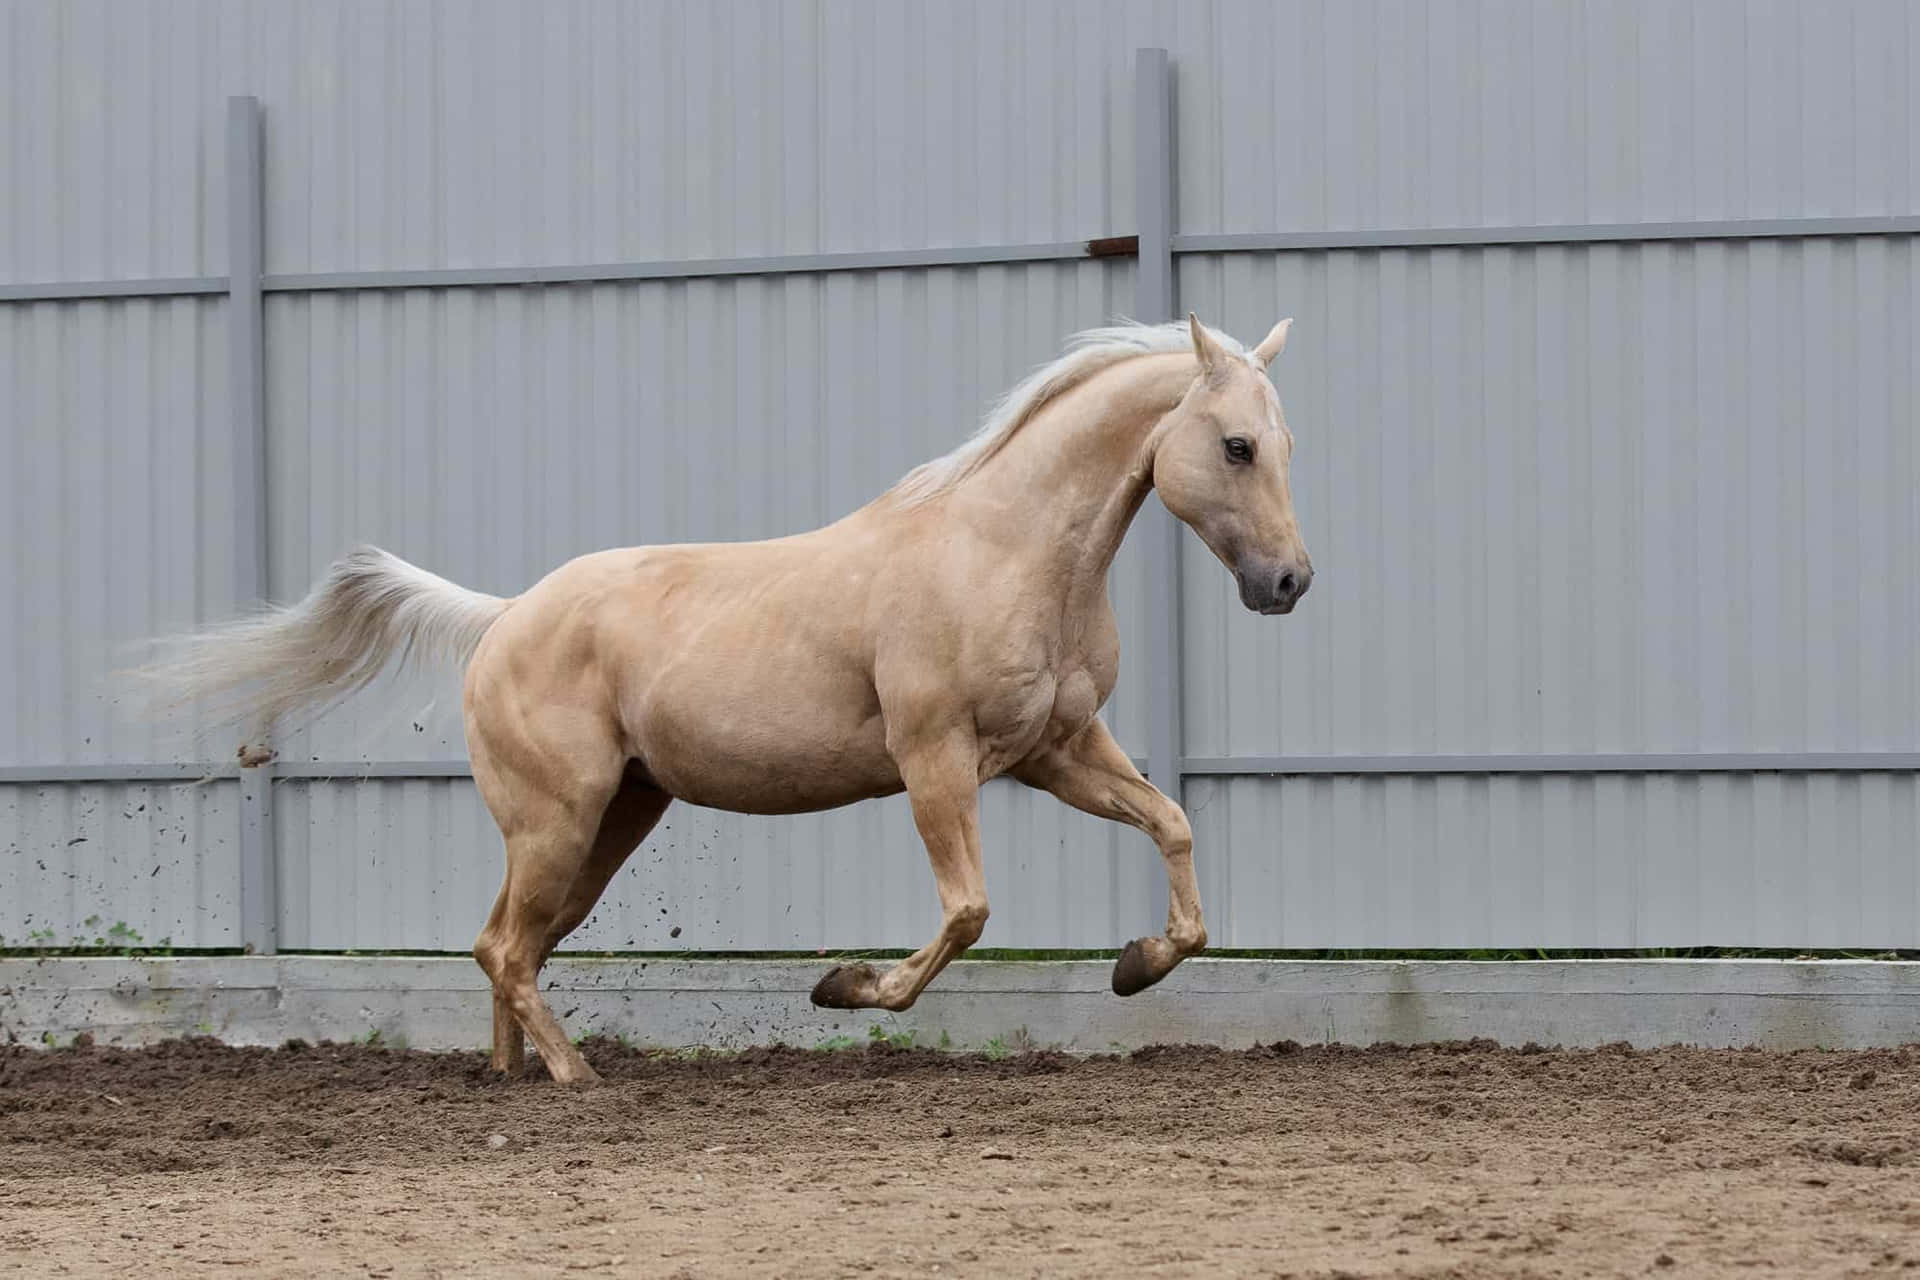 Bellezzain Movimento: Il Magnifico Cavallo Palomino